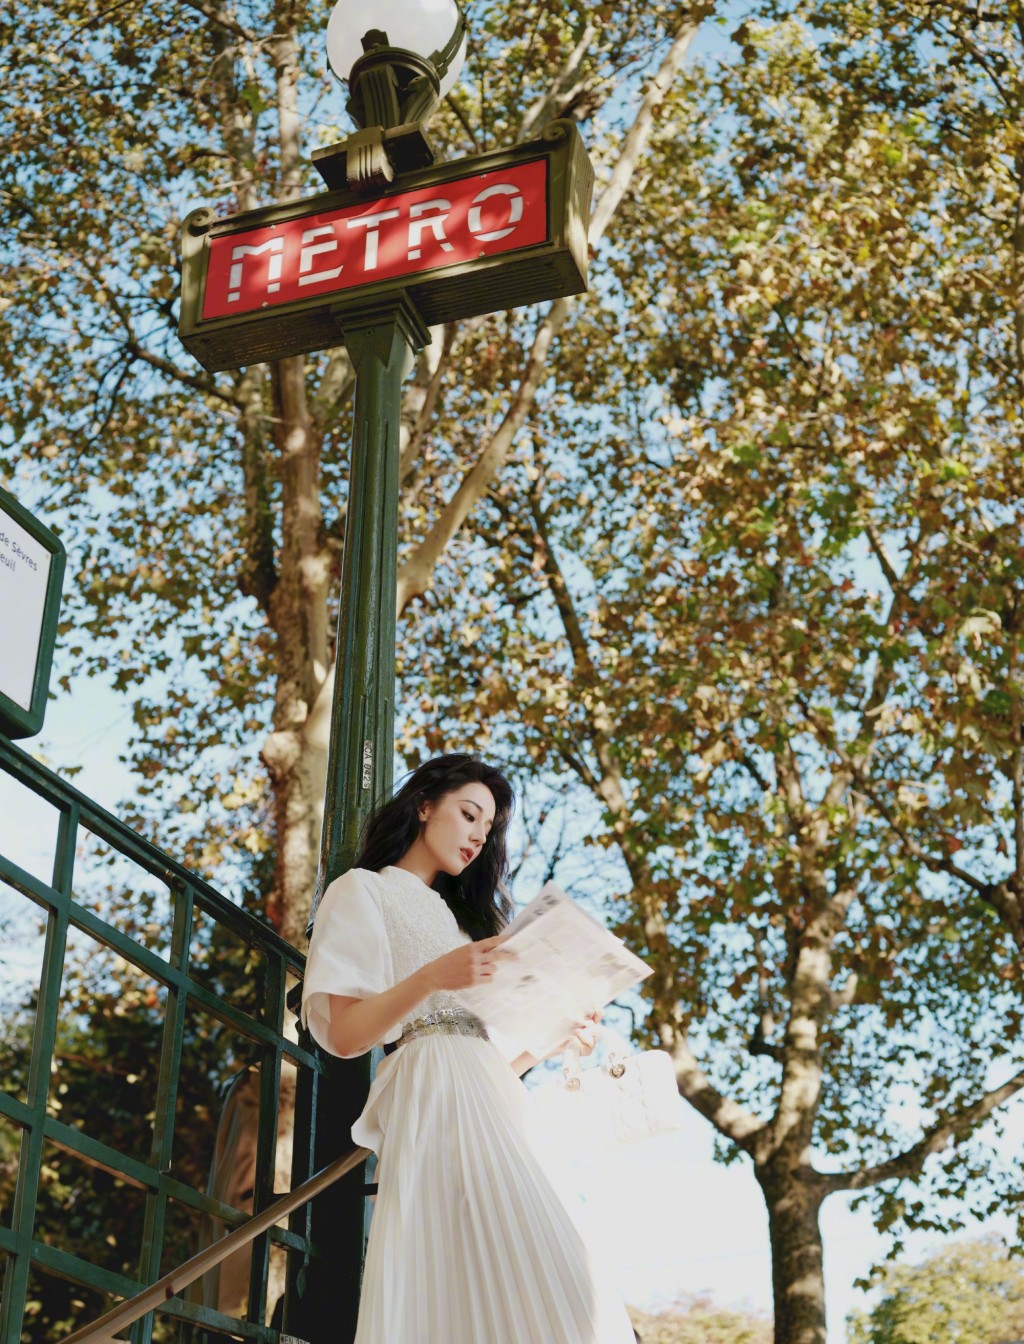 迪丽热巴优雅白裙巴黎街头写真